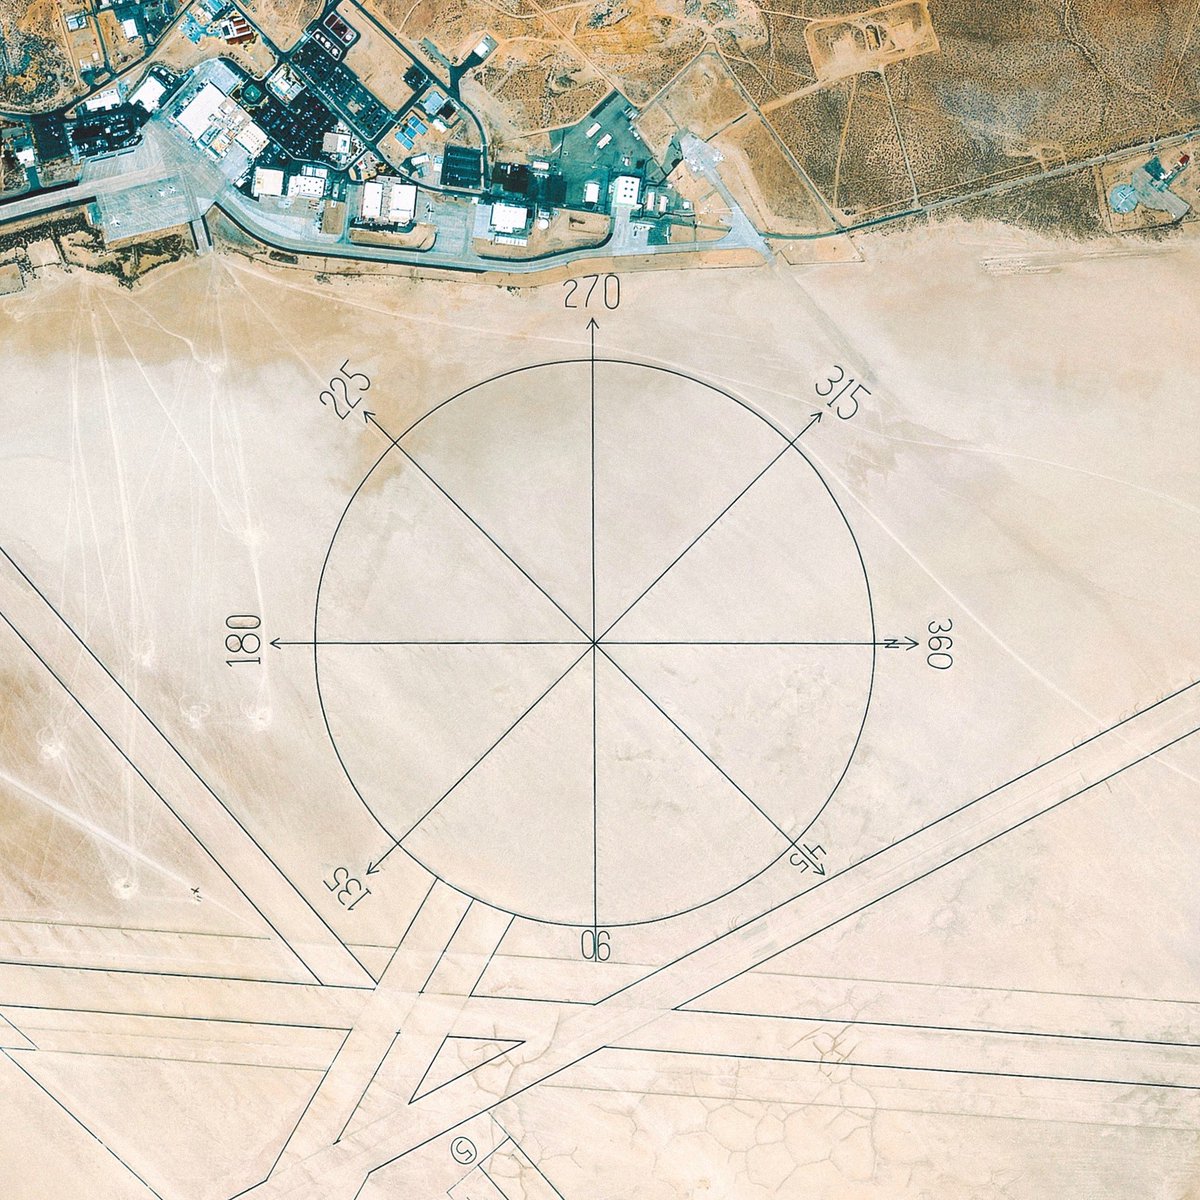 ベルカ宇宙軍 エドワーズ空軍基地の特大方位盤って 数百年経ったらナスカの地上絵みたいな扱いになりそうだな